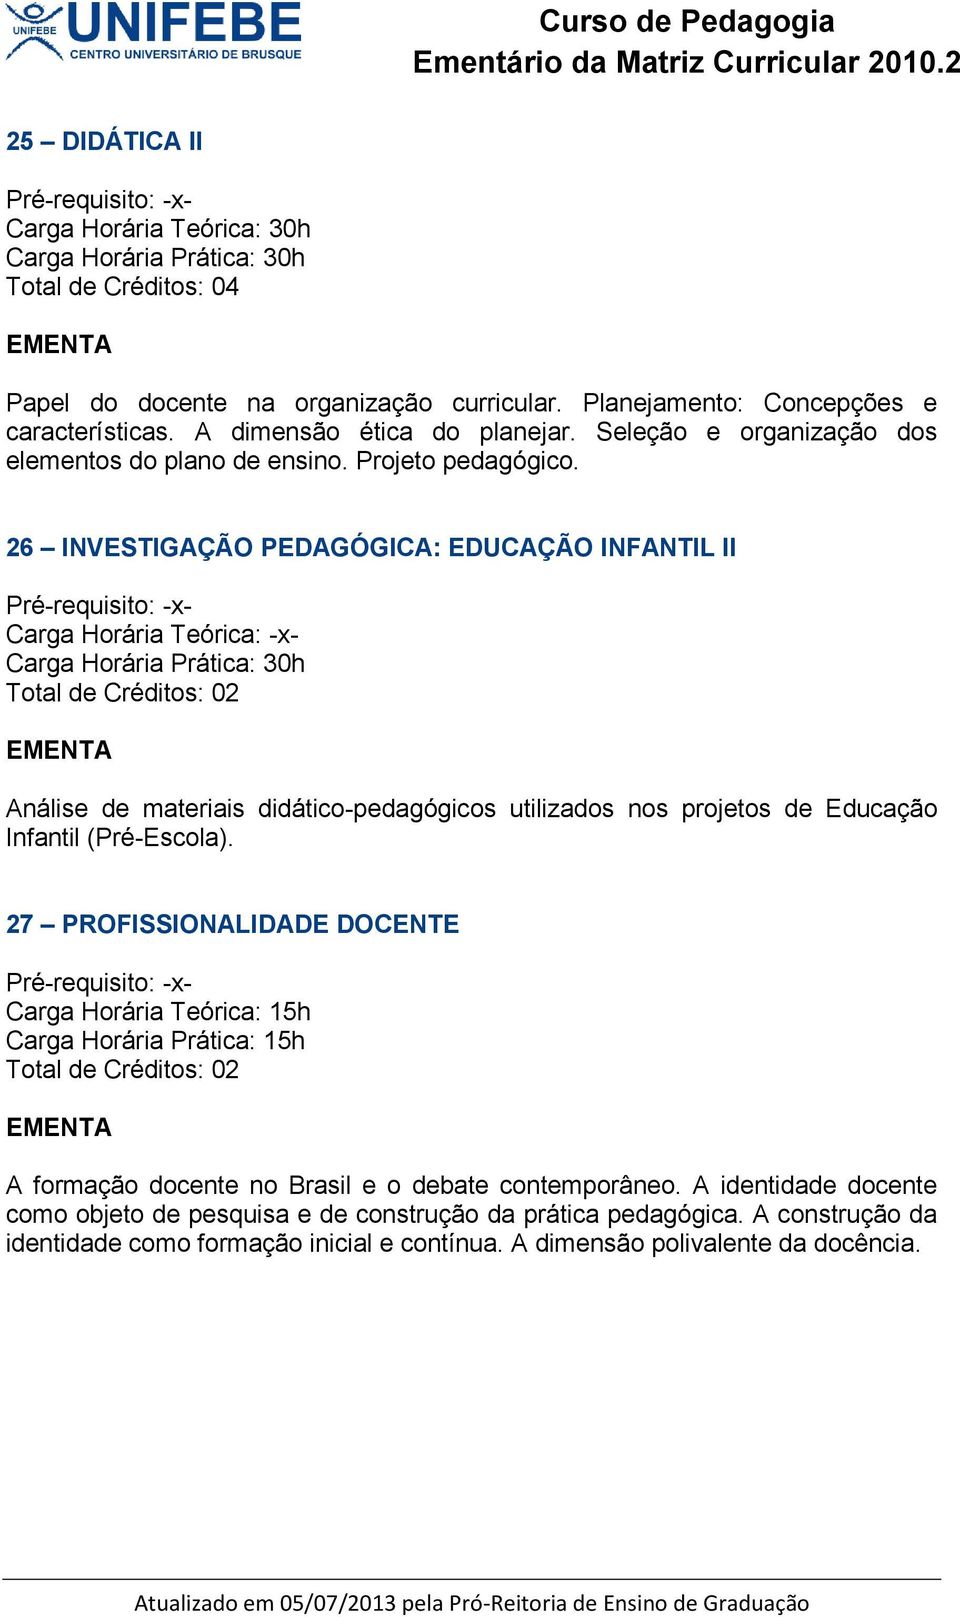 26 INVESTIGAÇÃO PEDAGÓGICA: EDUCAÇÃO INFANTIL II Análise de materiais didático-pedagógicos utilizados nos projetos de Educação Infantil (Pré-Escola).